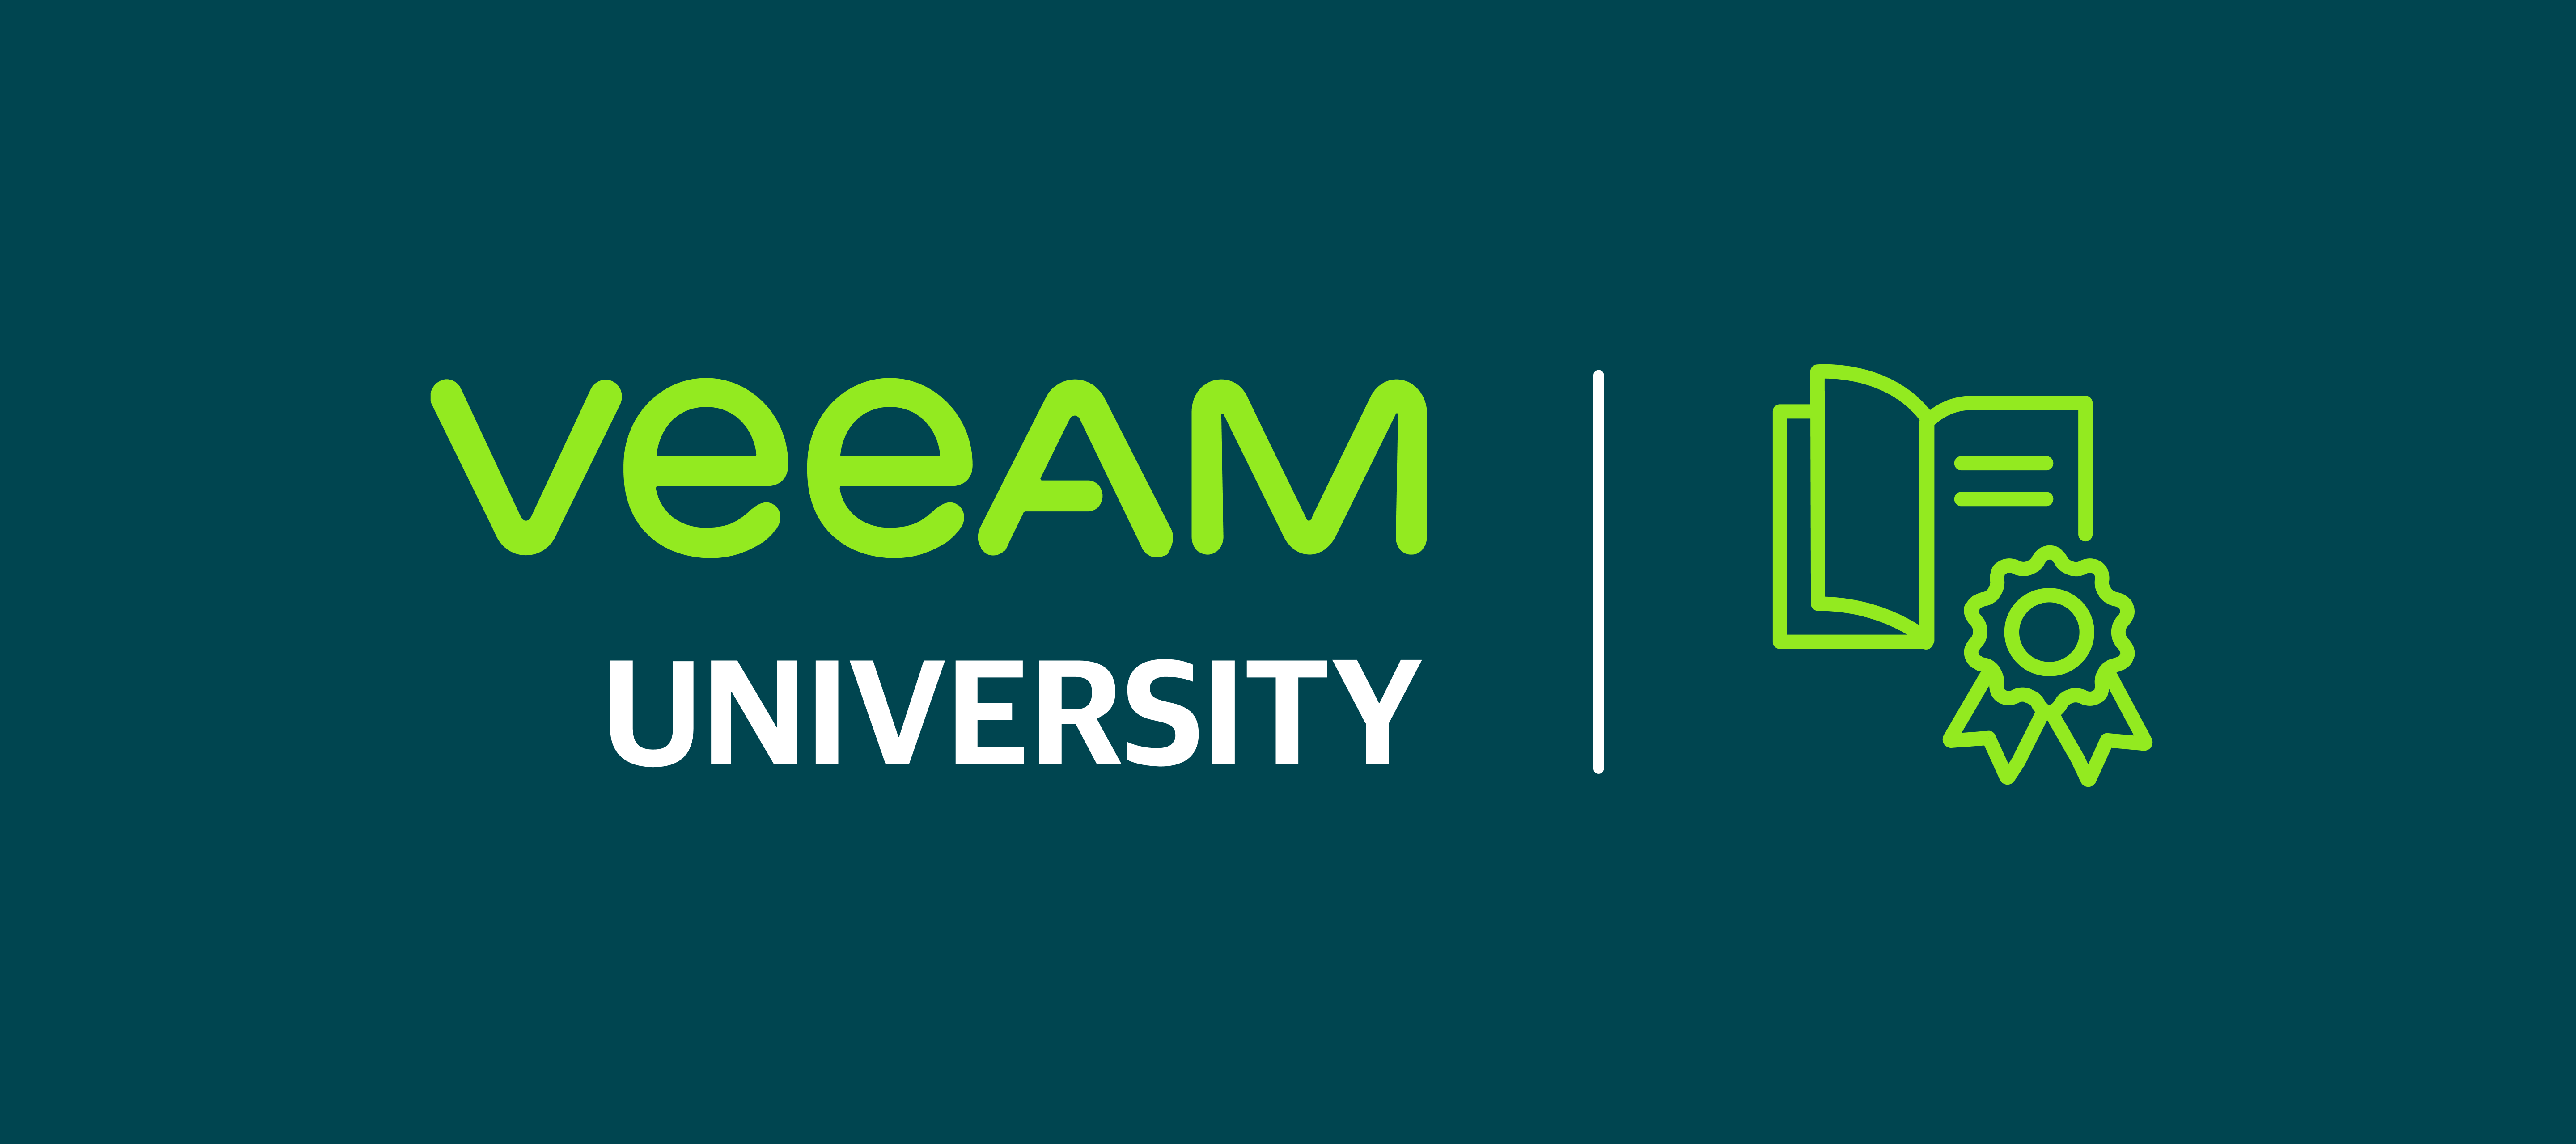 What is Veeam University?